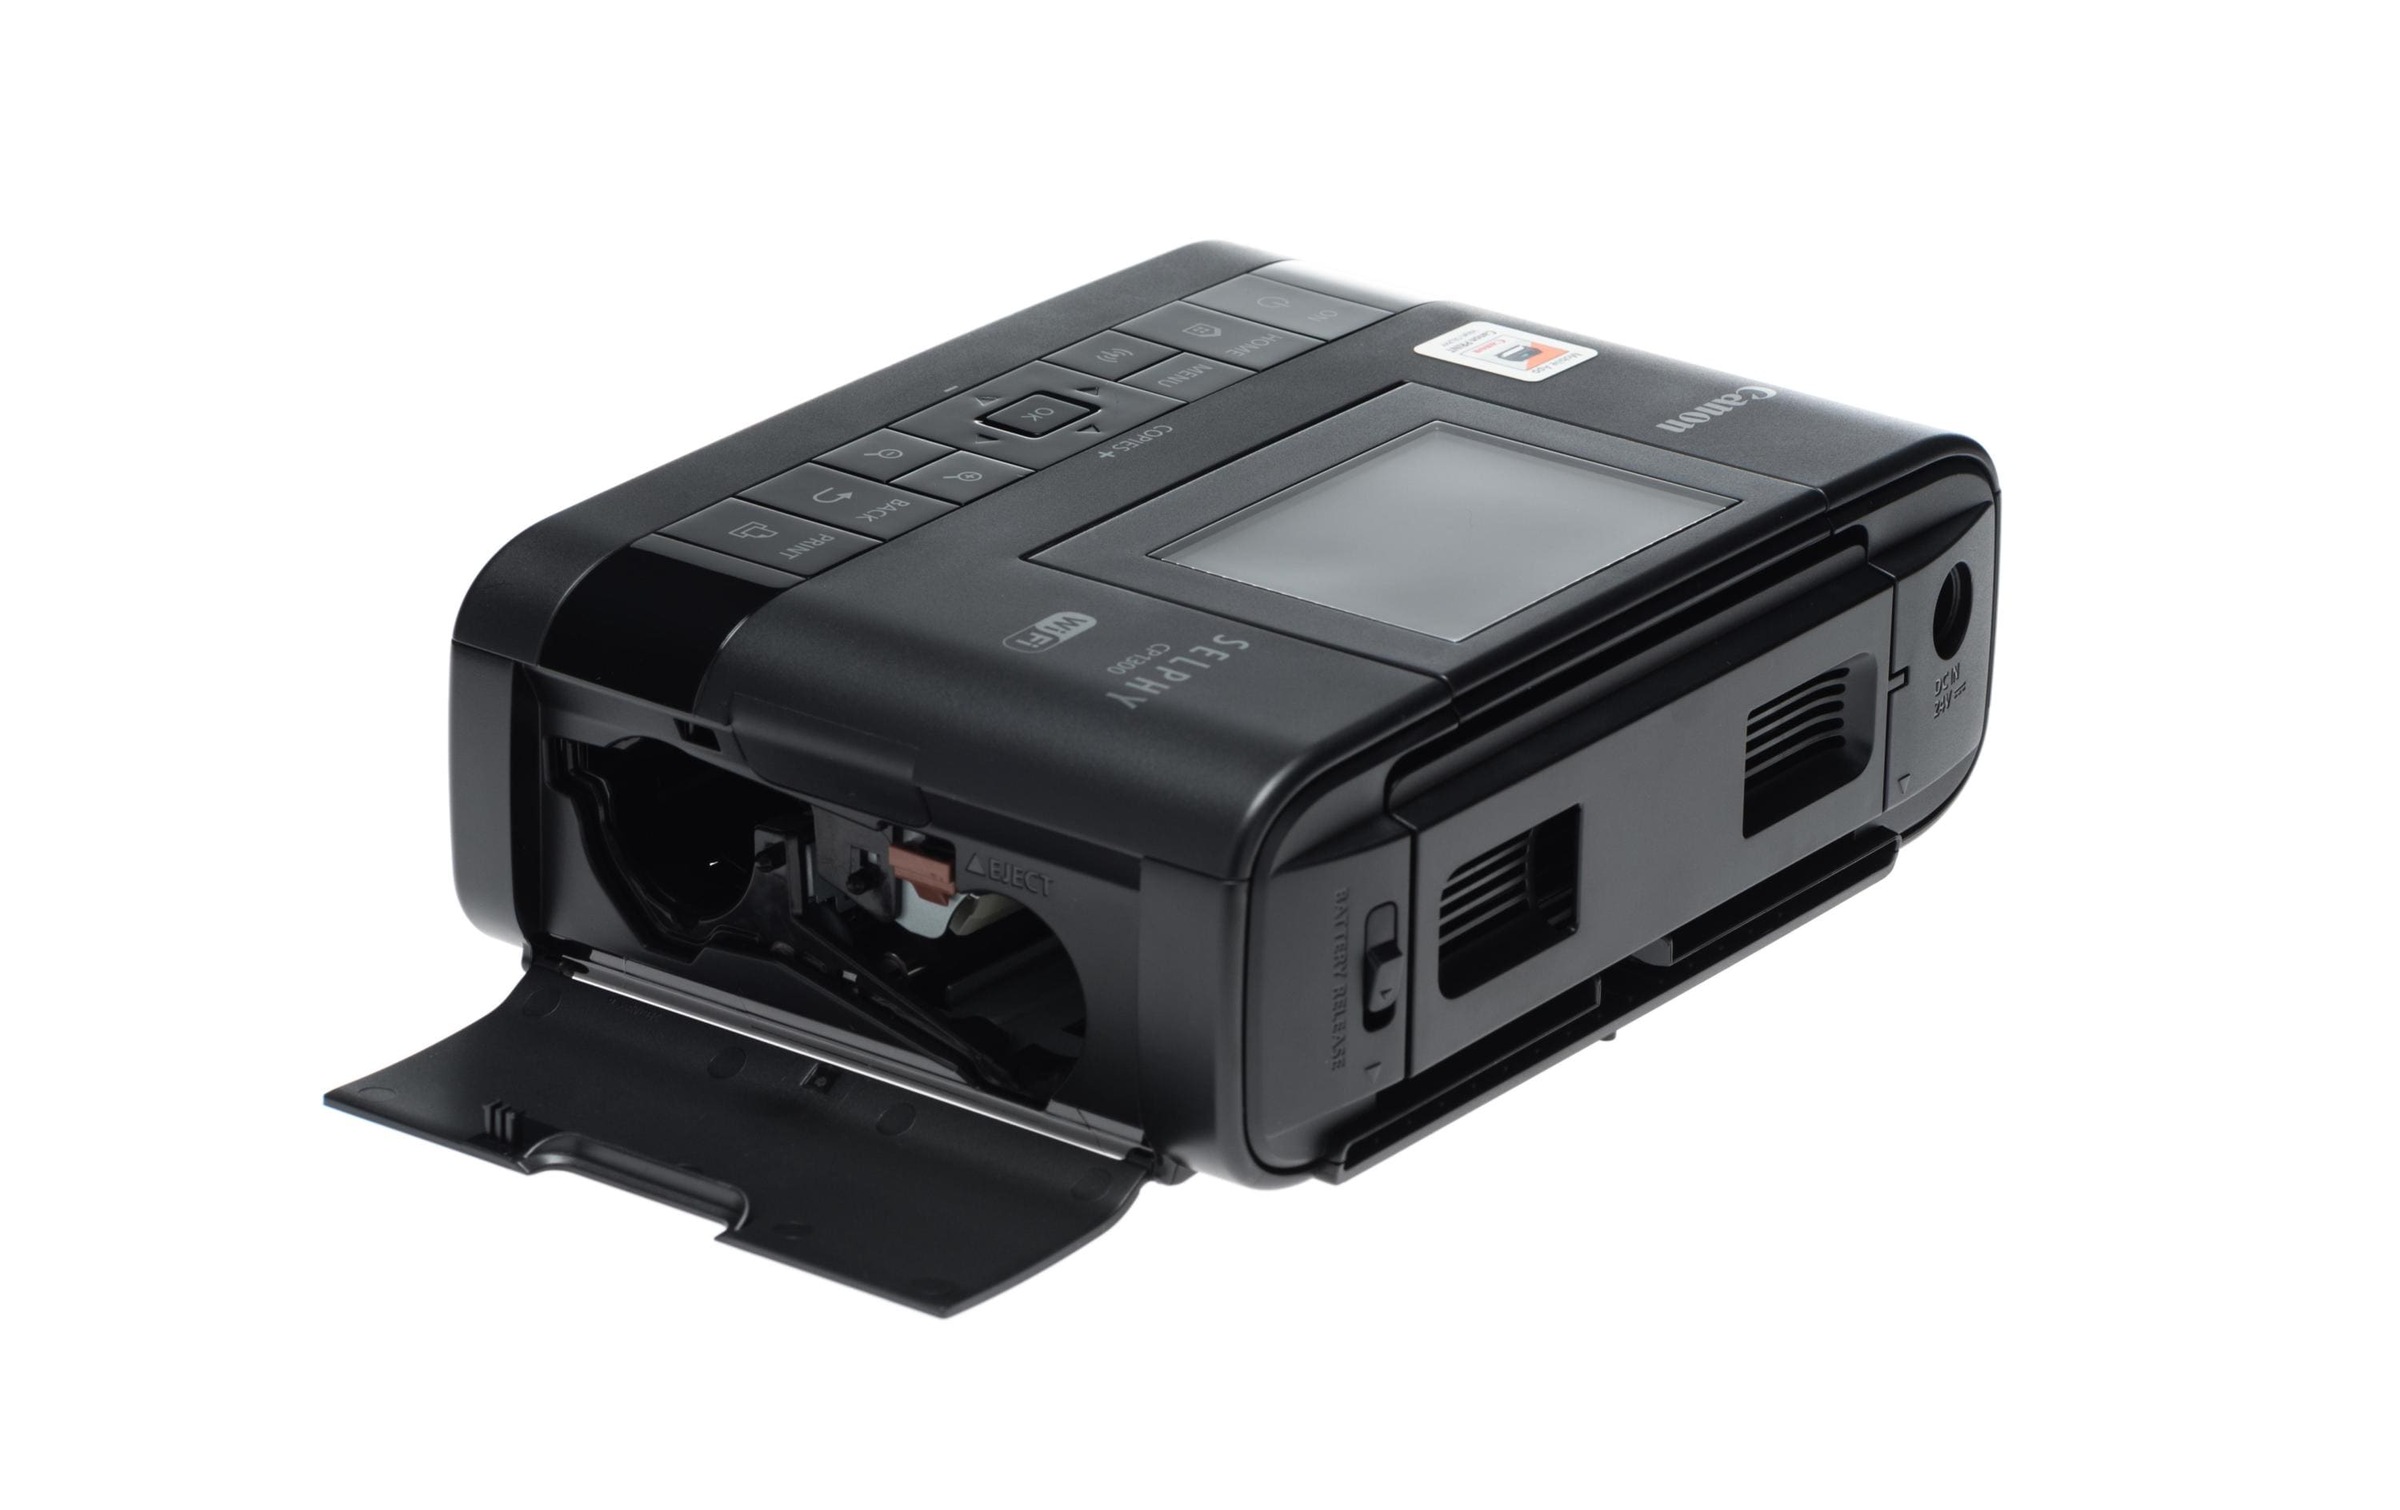 Canon Fotodrucker »Selphy CP1300«